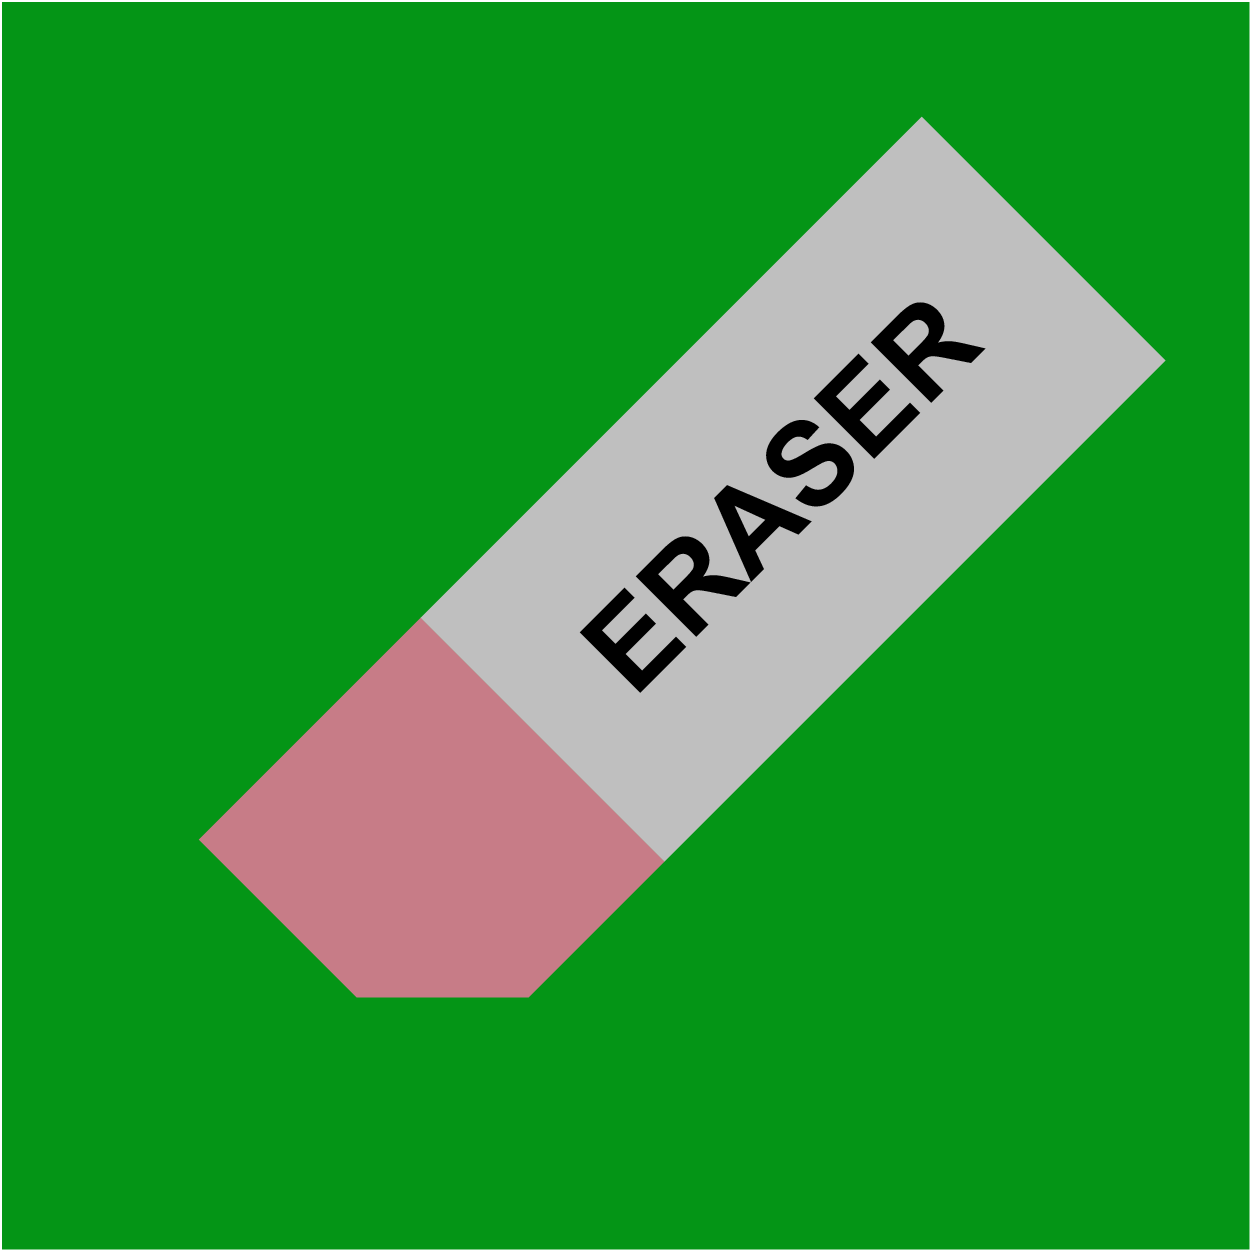 300px_300px_rights-eraser-05